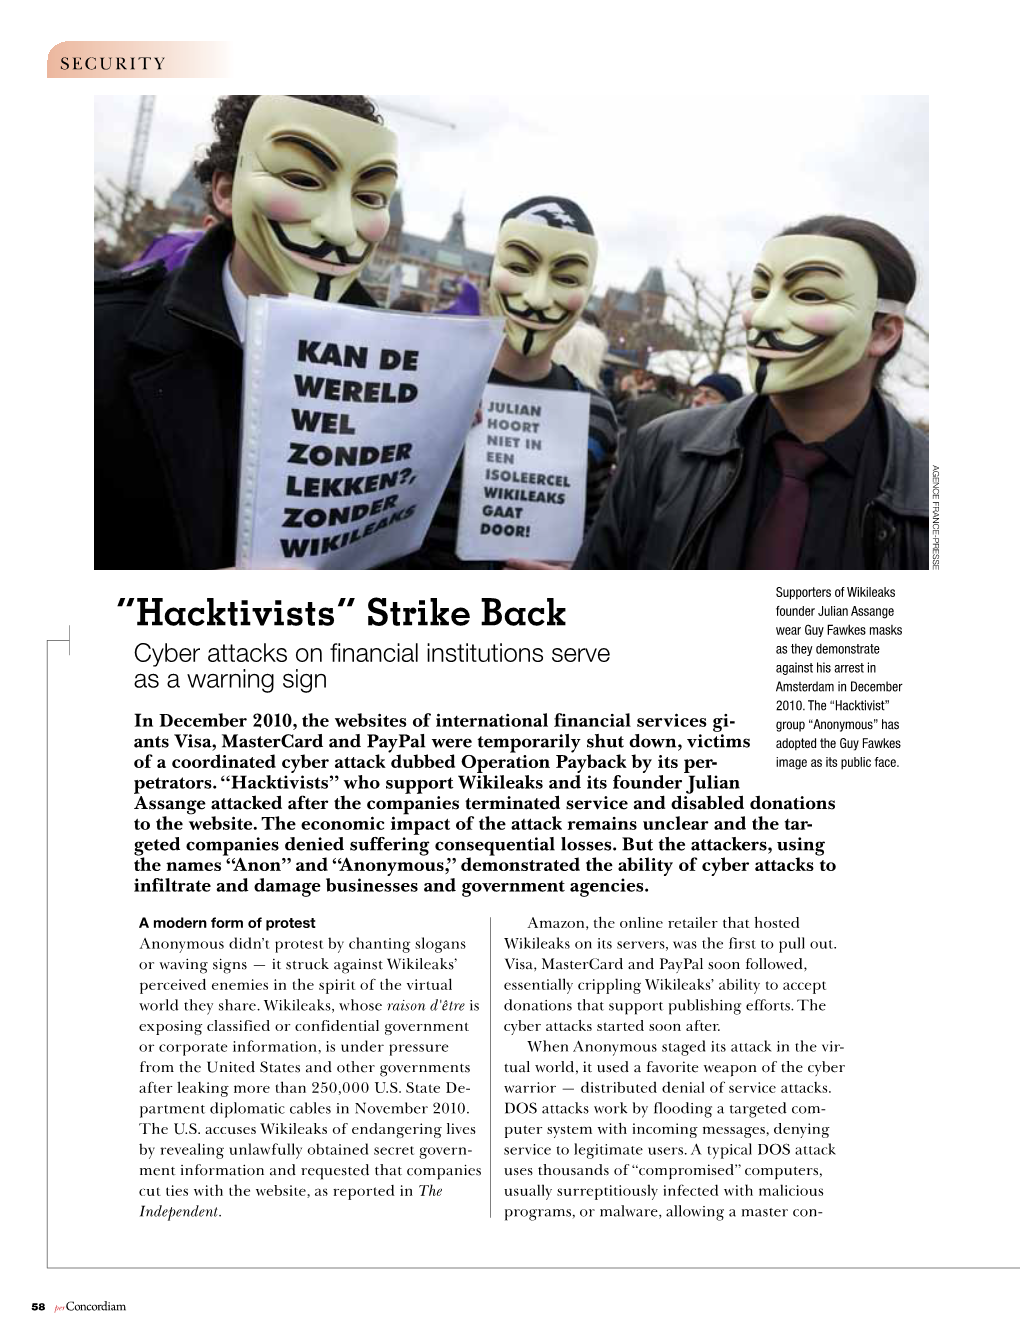 “Hacktivists” Strike Back